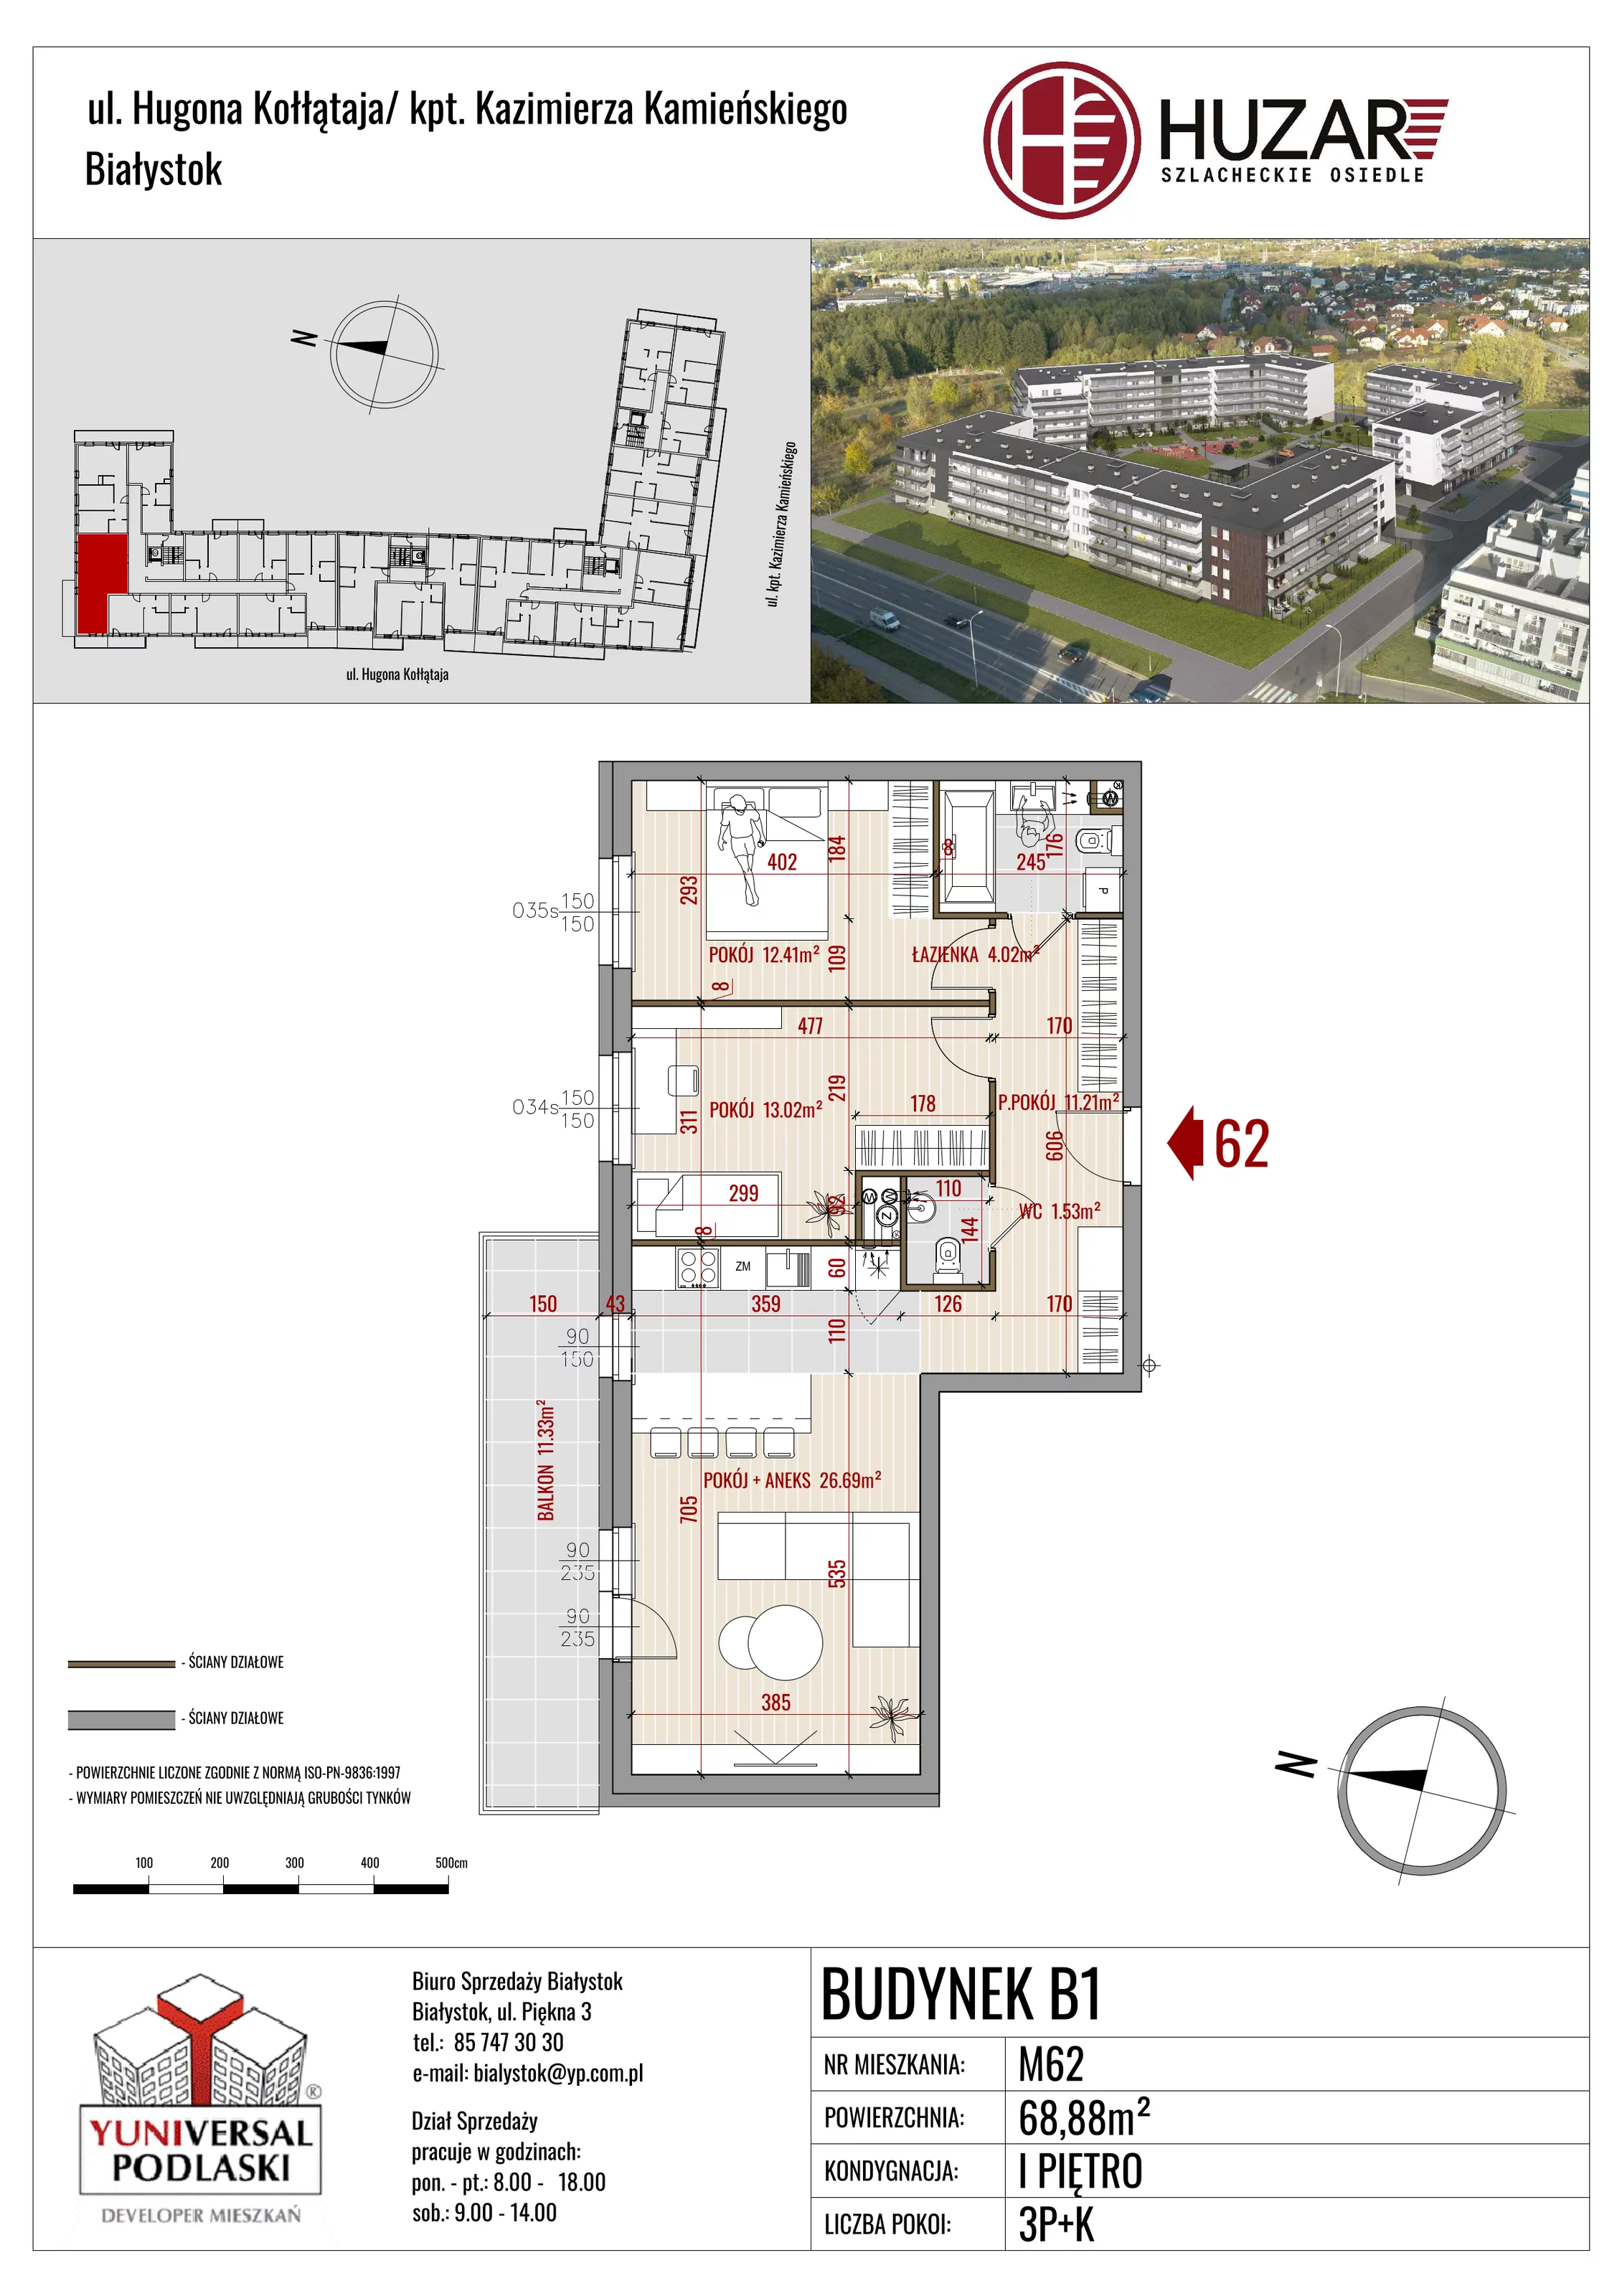 Mieszkanie 68,88 m², piętro 1, oferta nr B1/62, Huzar, Białystok, Bacieczki, ul. Hugona Kołłątaja / kpt. Kazimierza Kamieńskiego